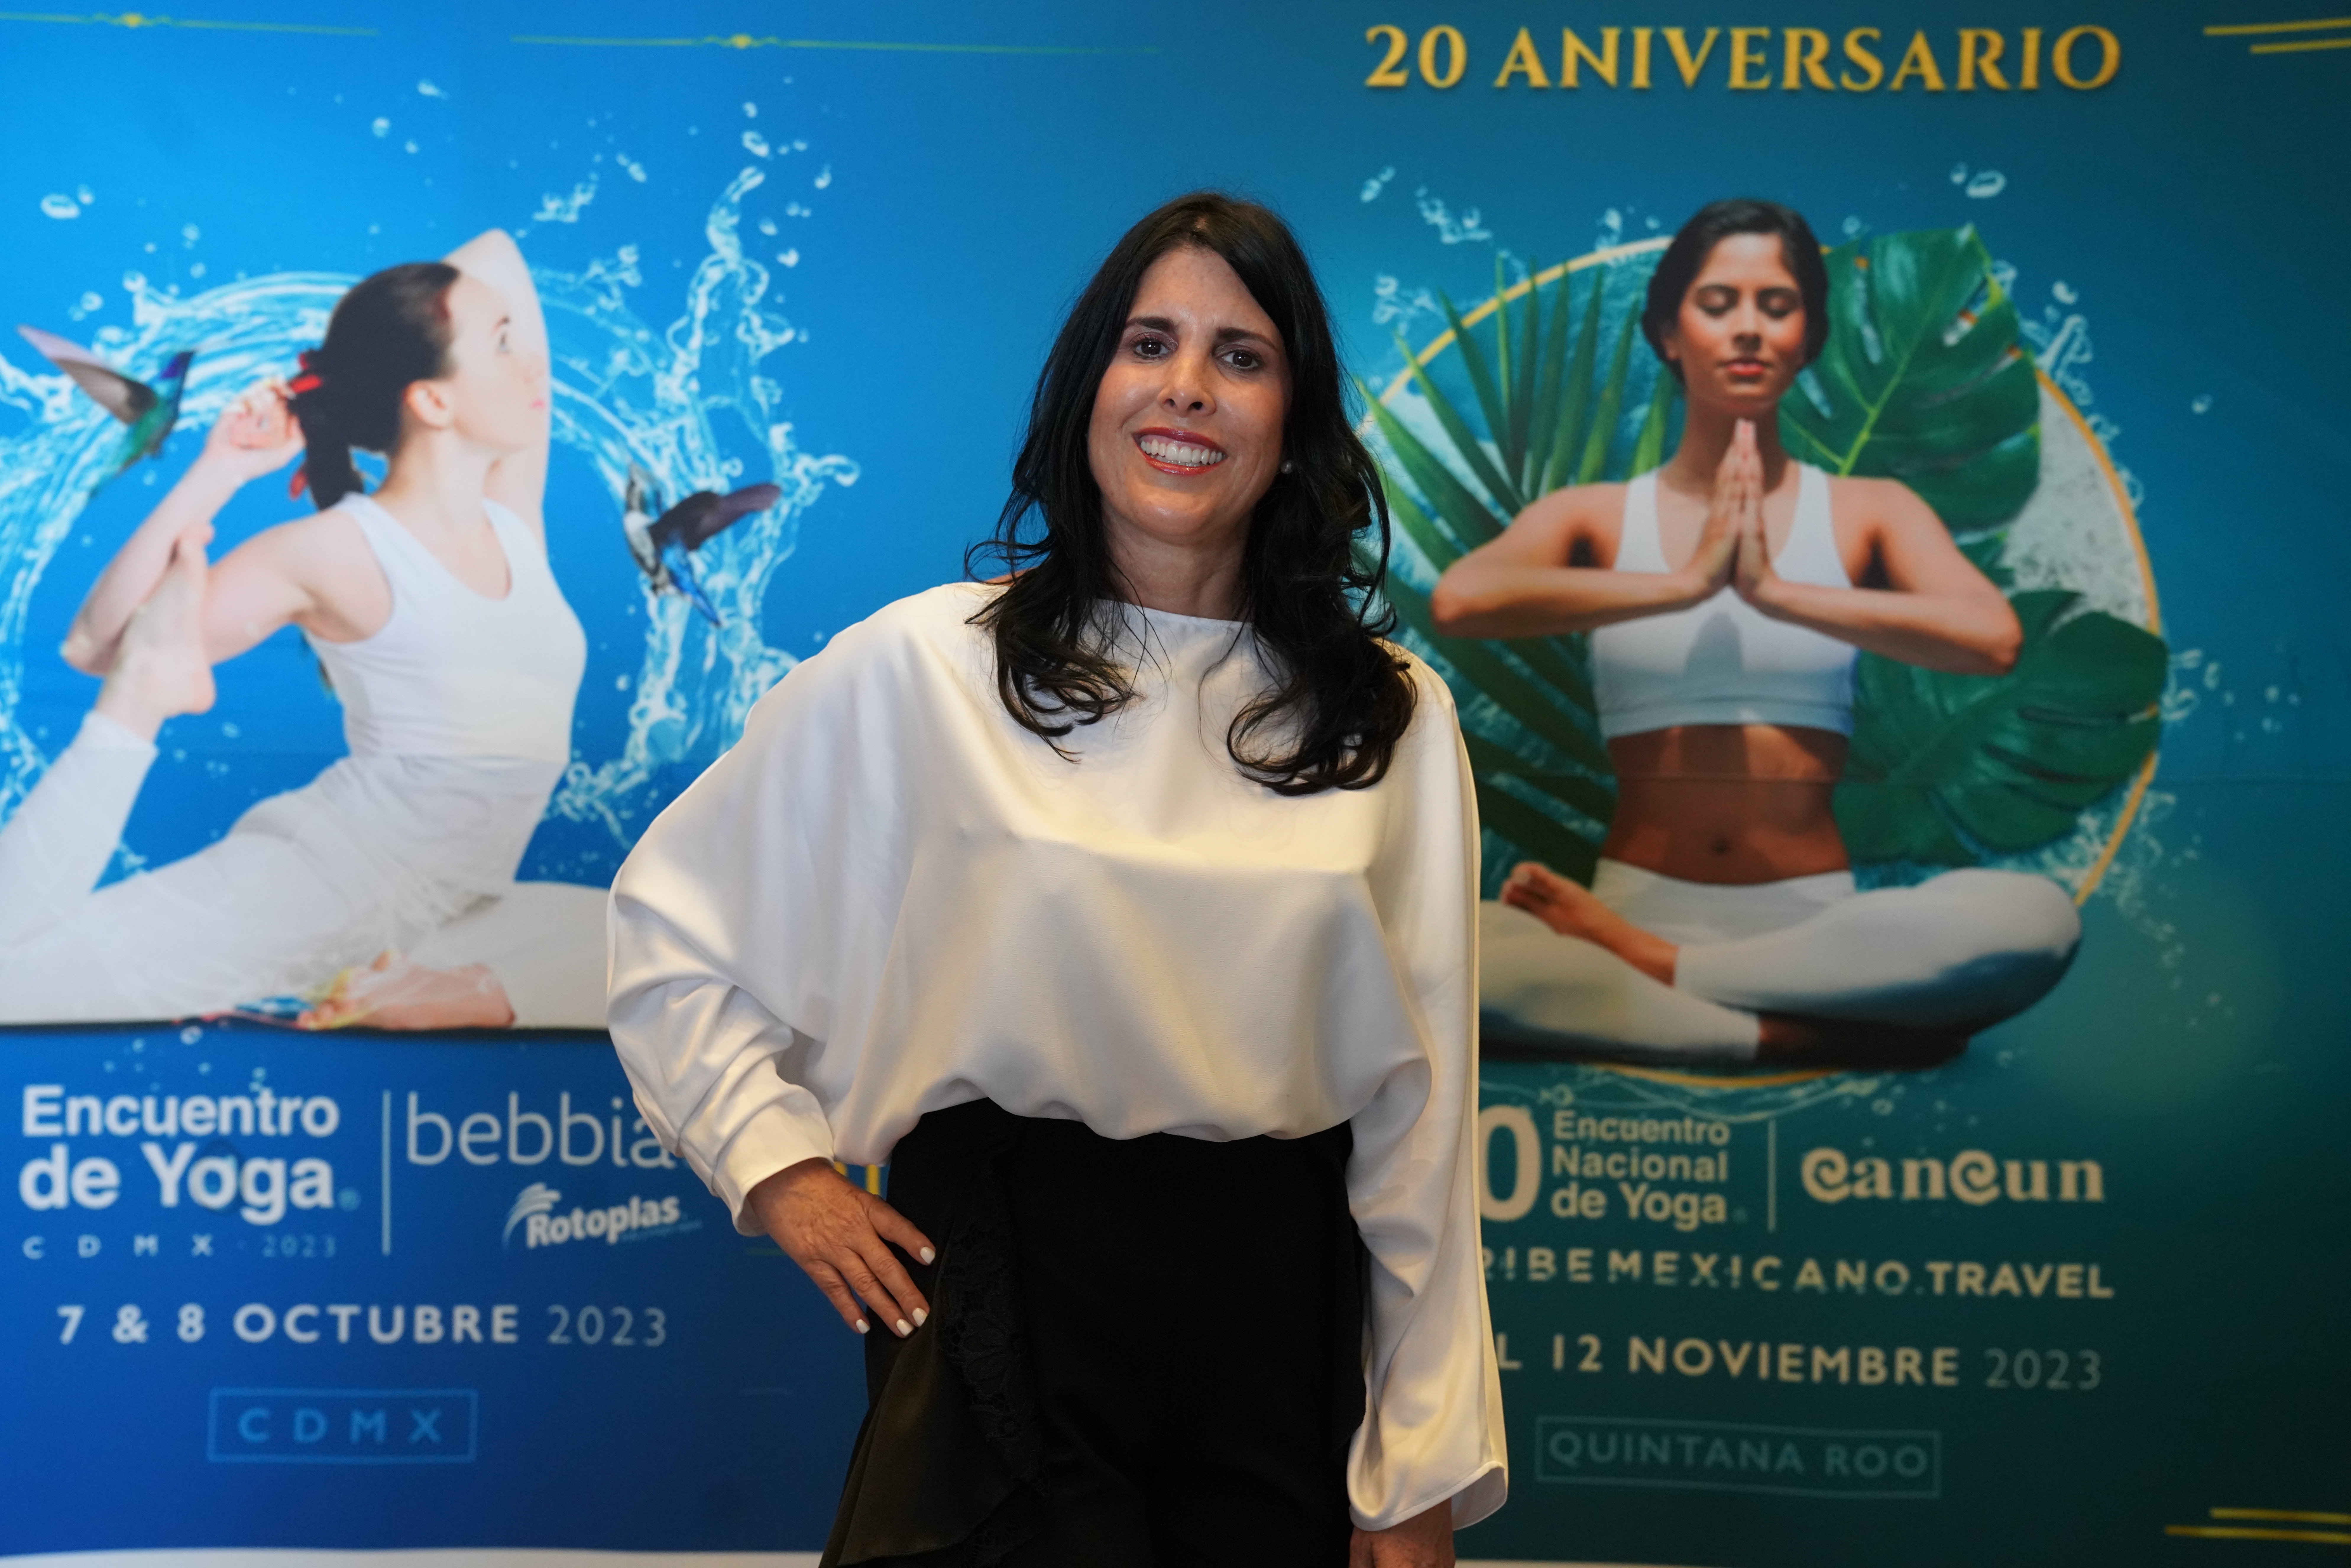 Q. Roo Presenta la 20° edición del Encuentro Nacional de Yoga “Cancún 2023”